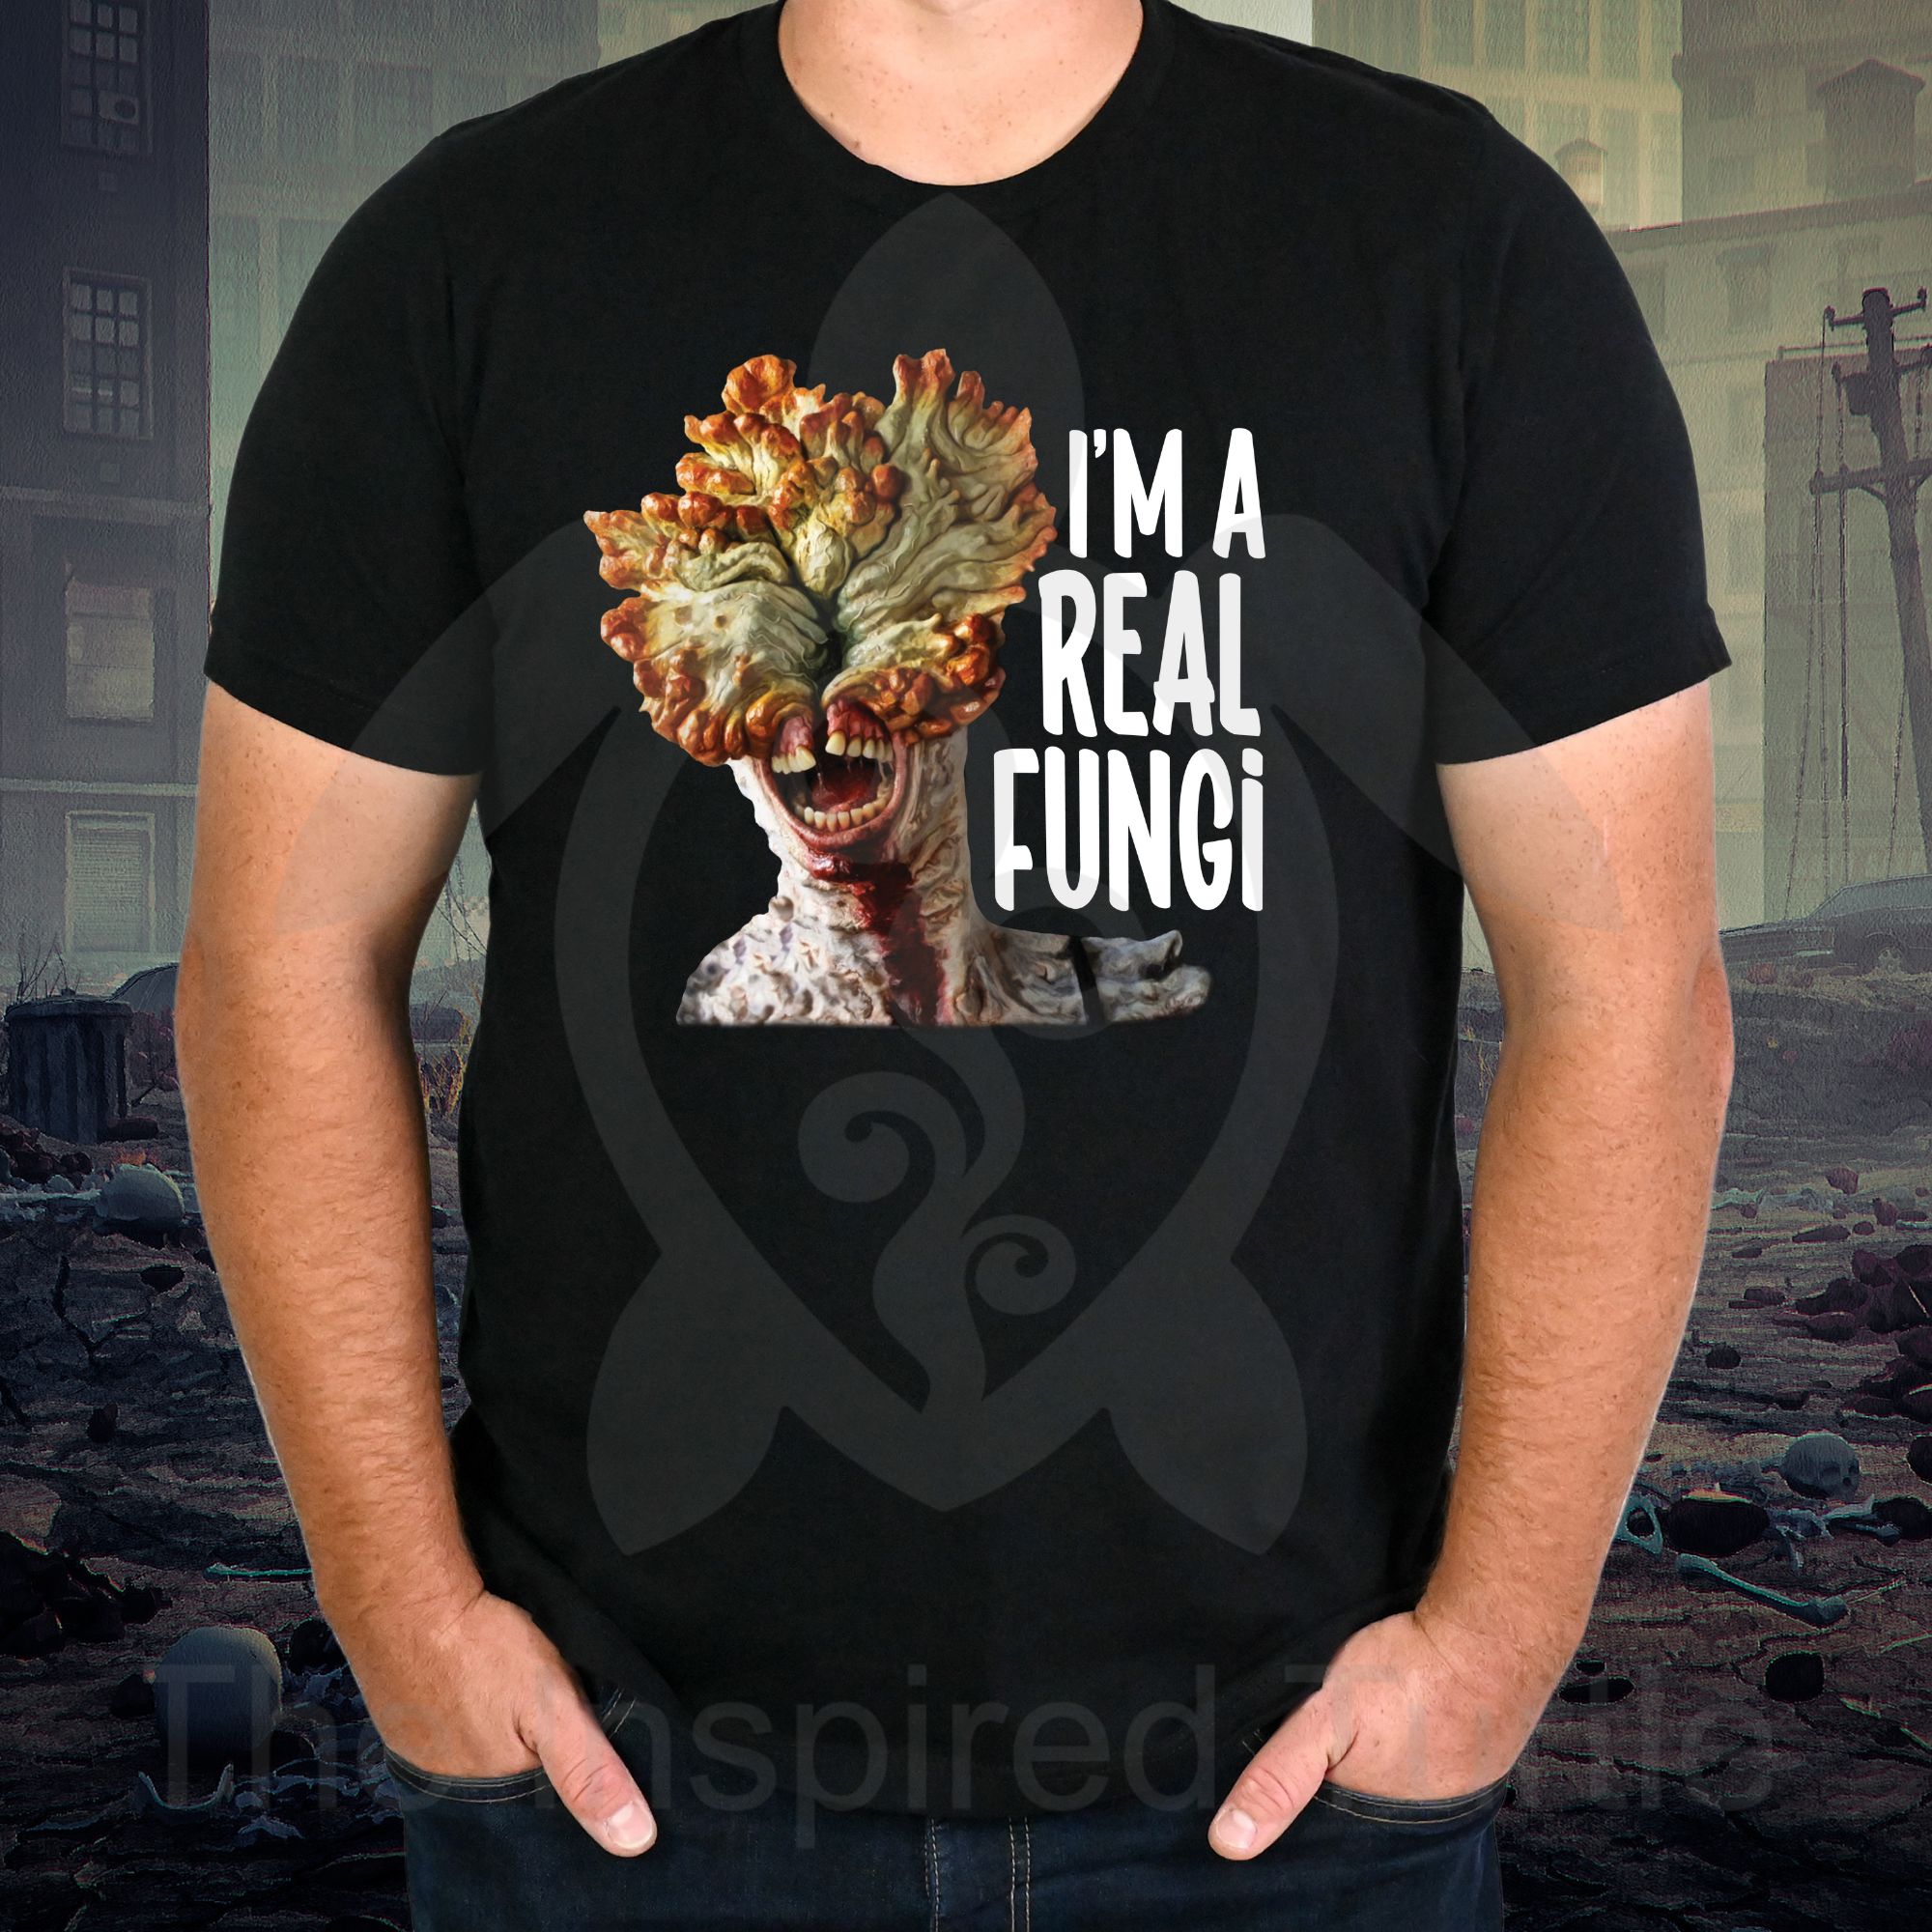 I'm a real fungi- T-shirt